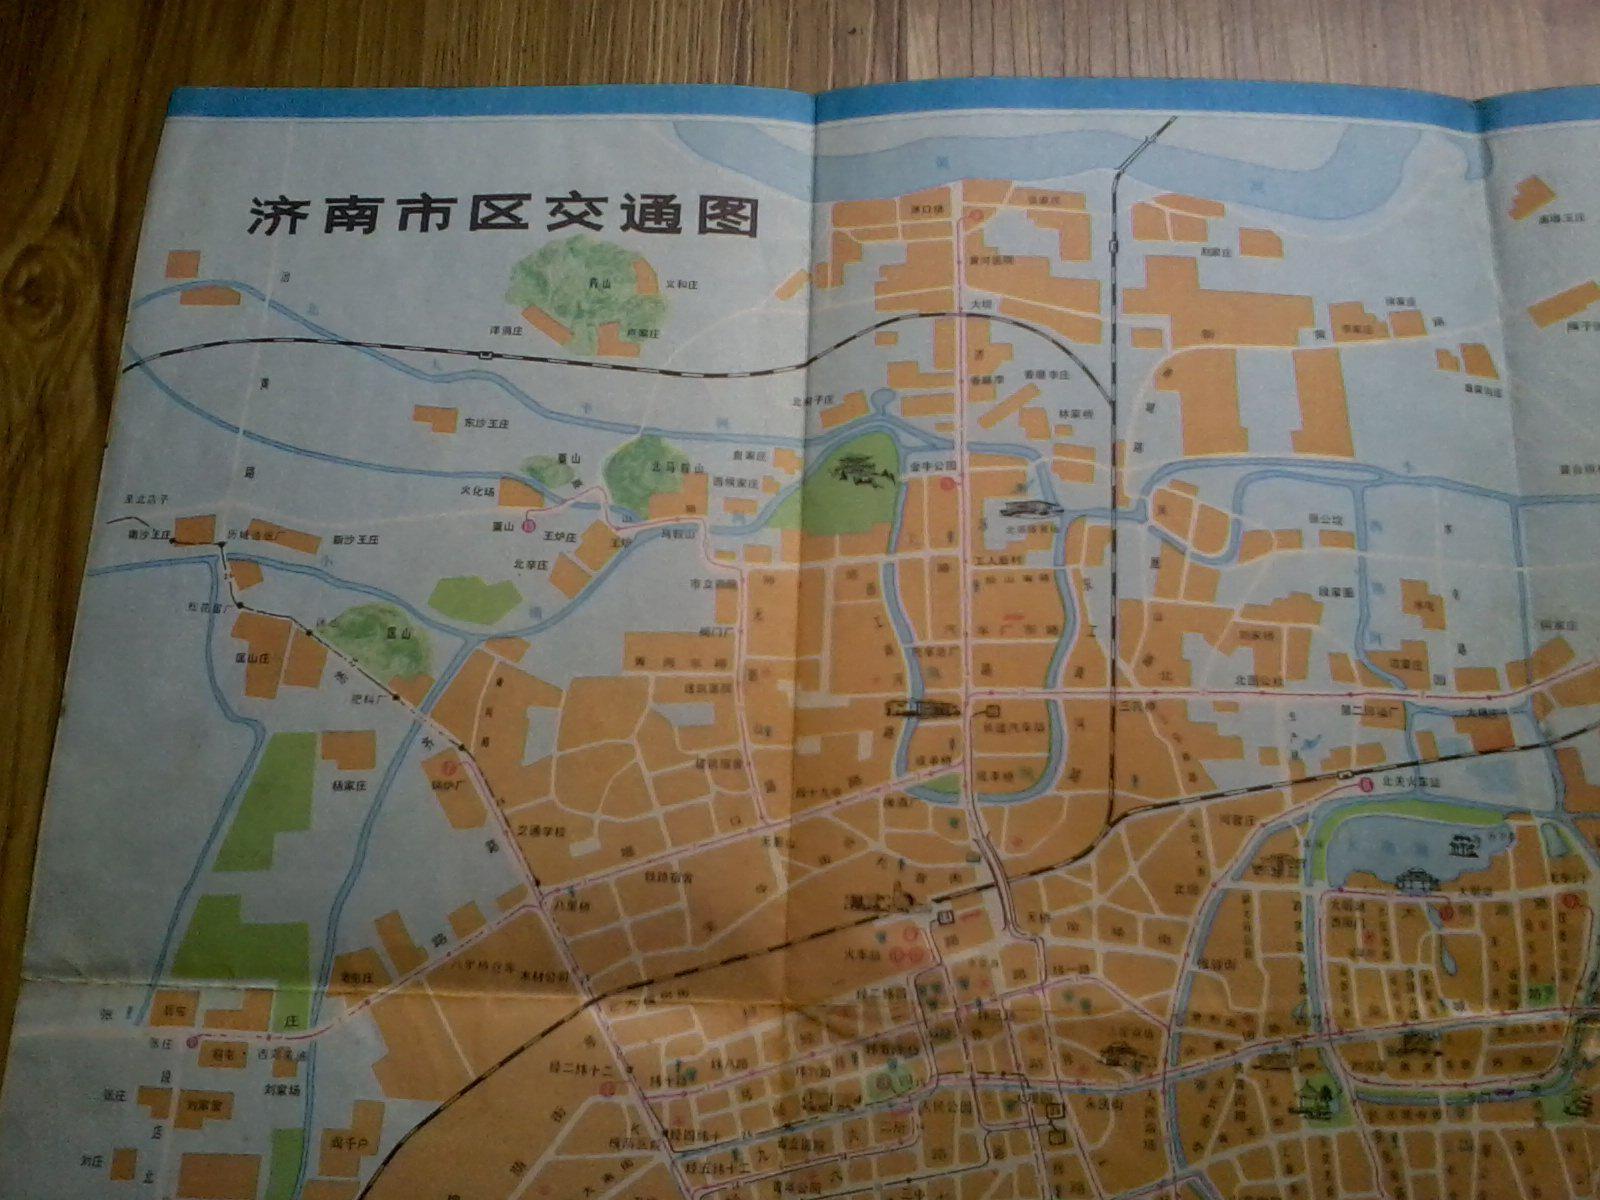 【图】【老地图】济南市交通图(品自见图 折叠